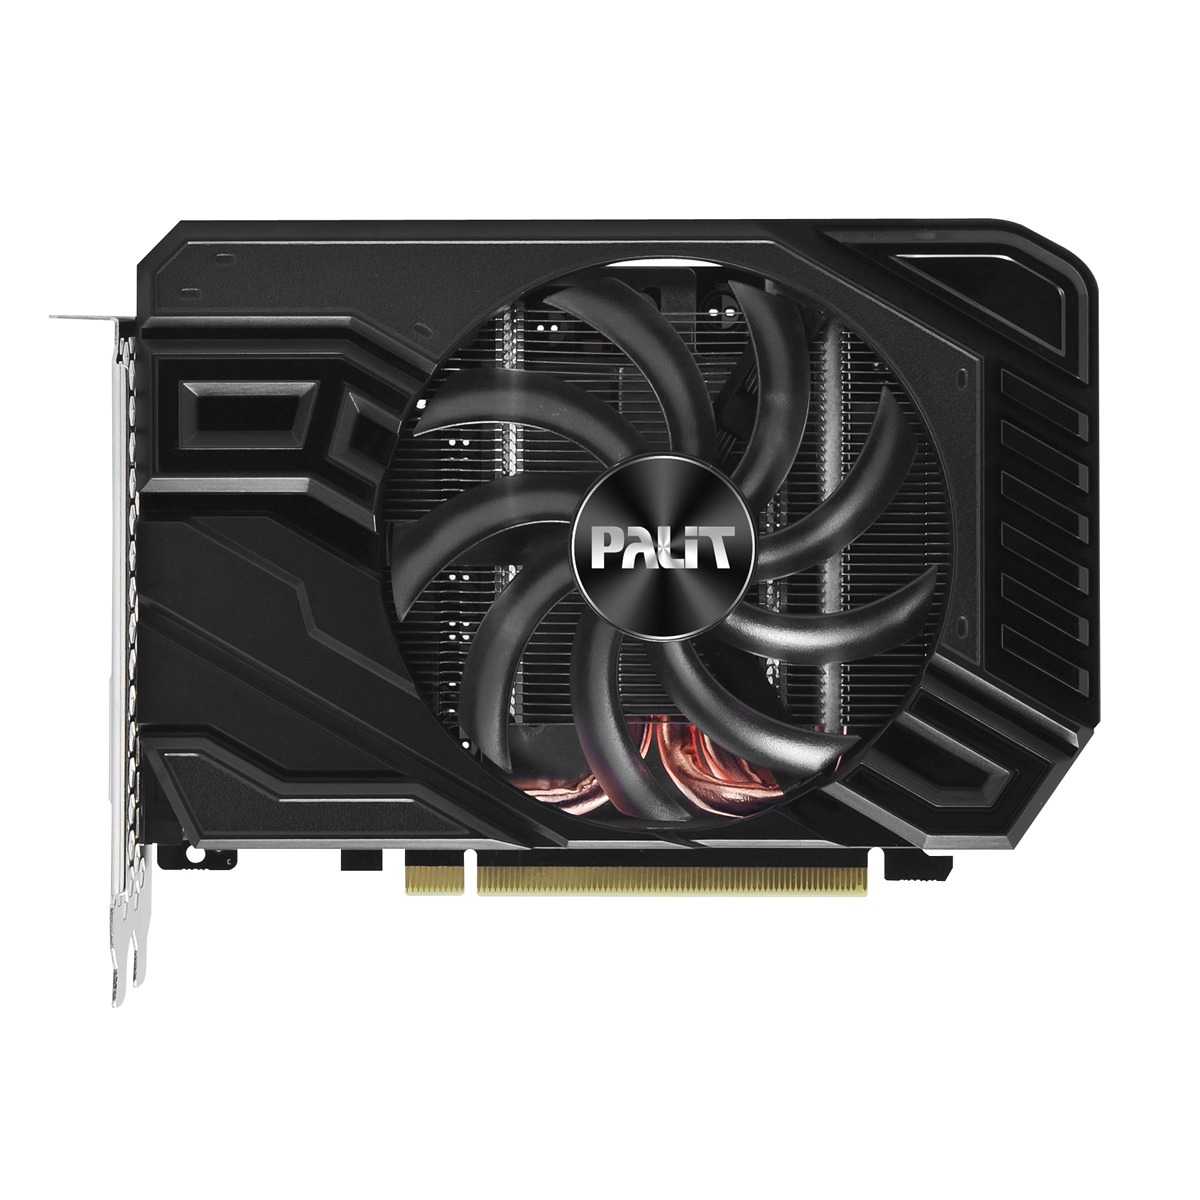 Palit - Palit GeForce GTX 1660Ti StormX 6144MB GDDR6 PCI-Express Graphics Card